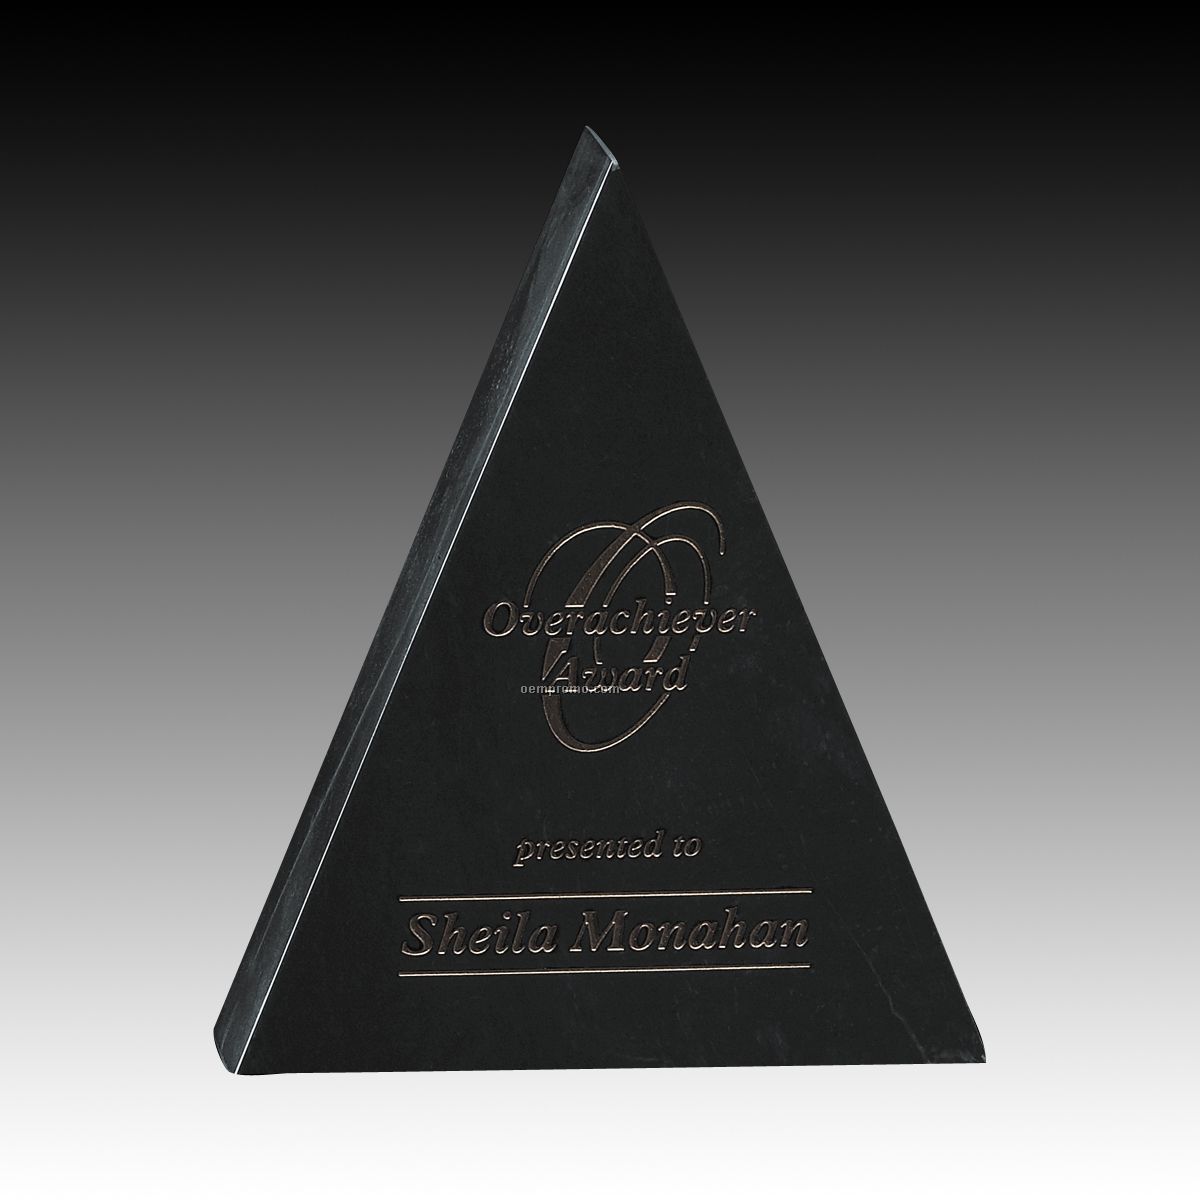 5" Hastings Marble Pyramid Award